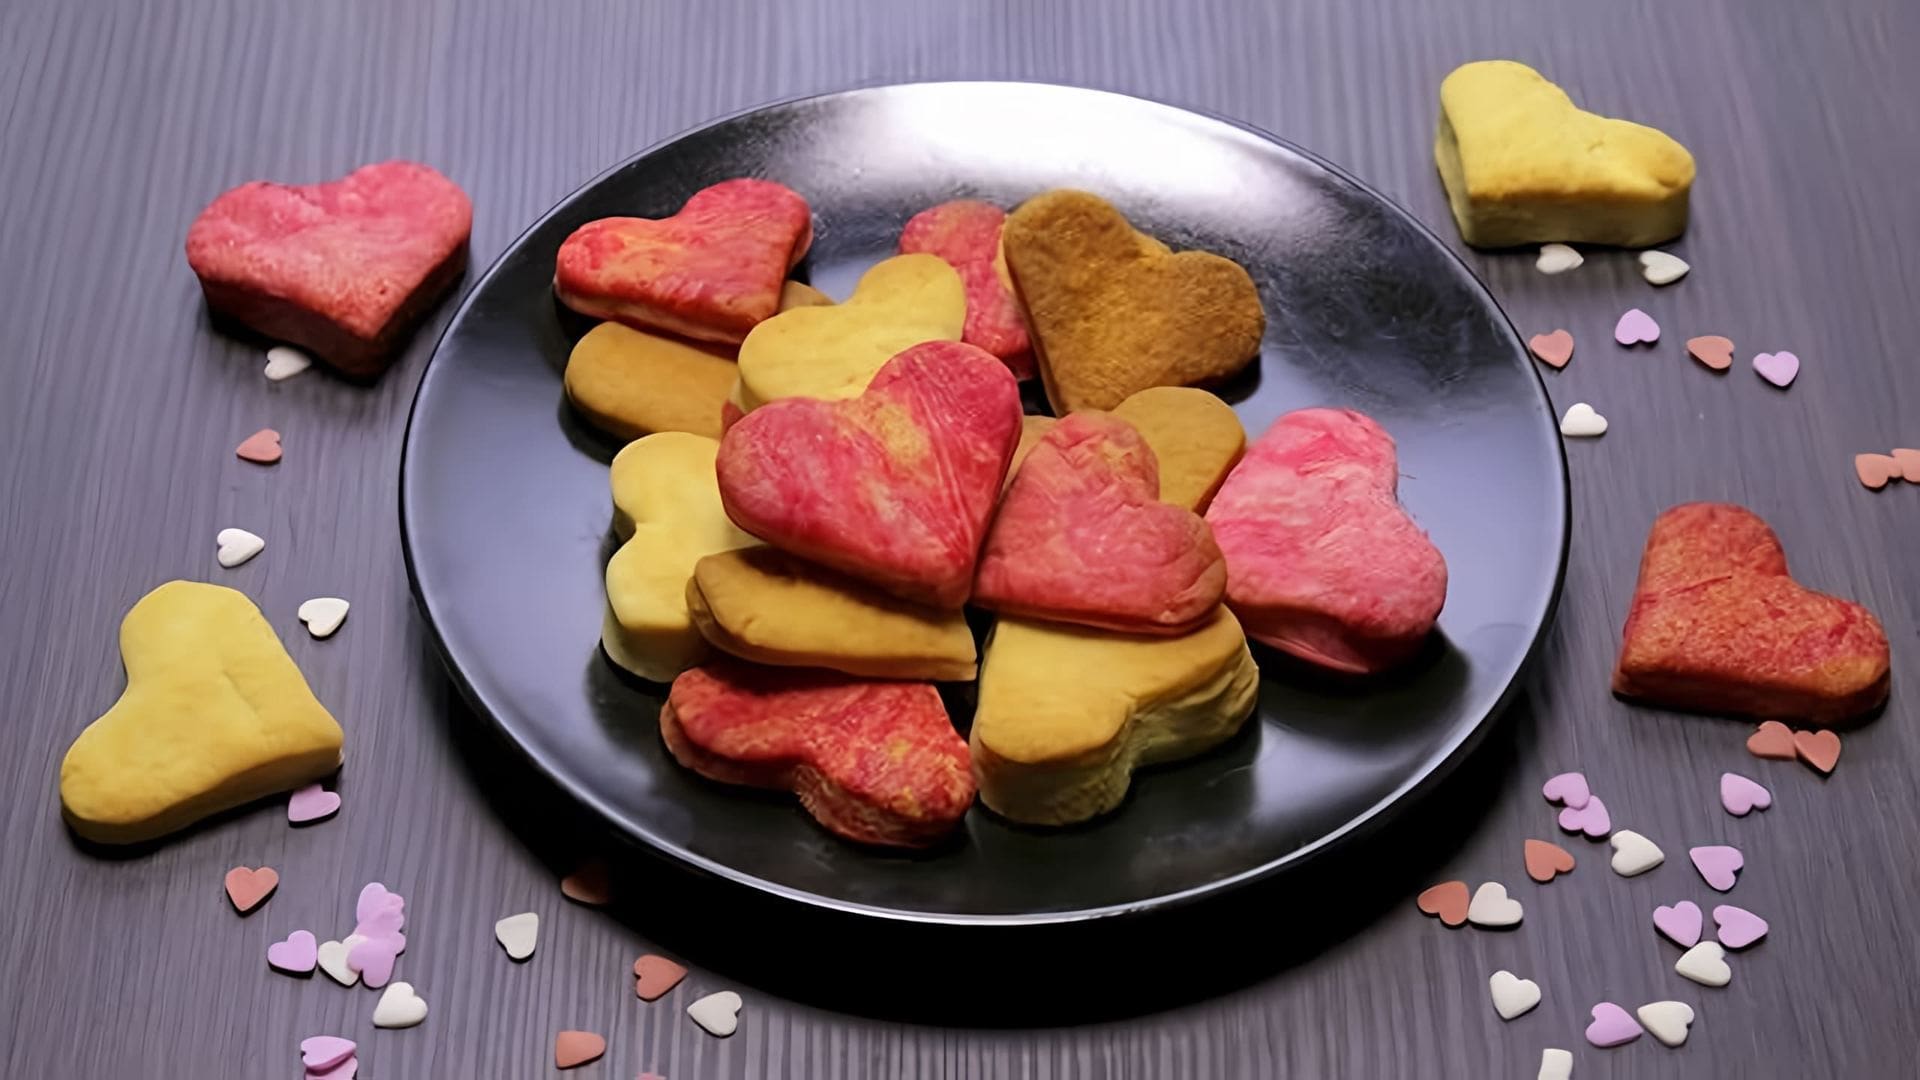 В этом видео-ролике вы увидите, как приготовить печенье в форме сердечек, которые можно использовать в качестве съедобных валентинок